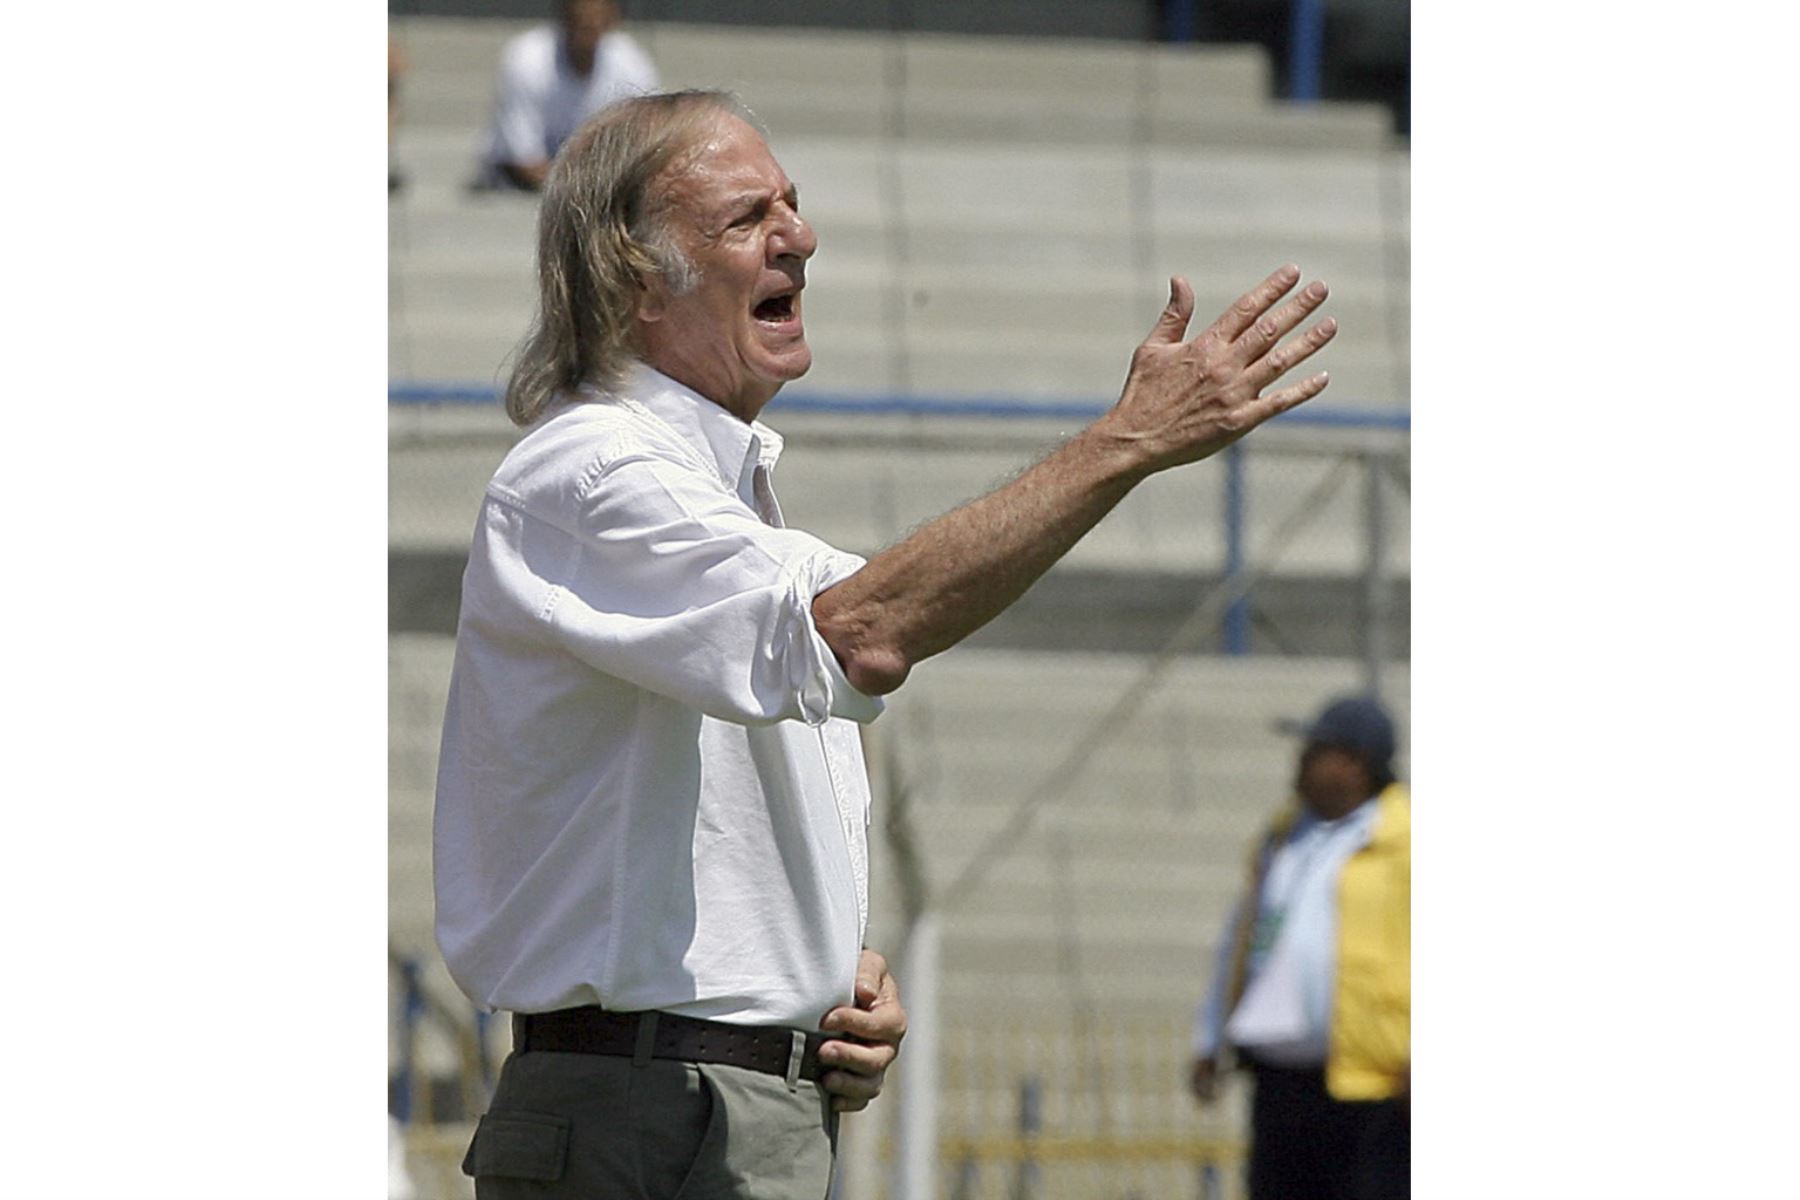 El entrenador de los Tecos mexicanos, el argentino César Luis Menotti, da instrucciones a sus jugadores durante el partido del torneo inaugural de la Liga Mexicana contra Pumas en la Ciudad de México, el 16 de septiembre de 2007. Foto: AFP